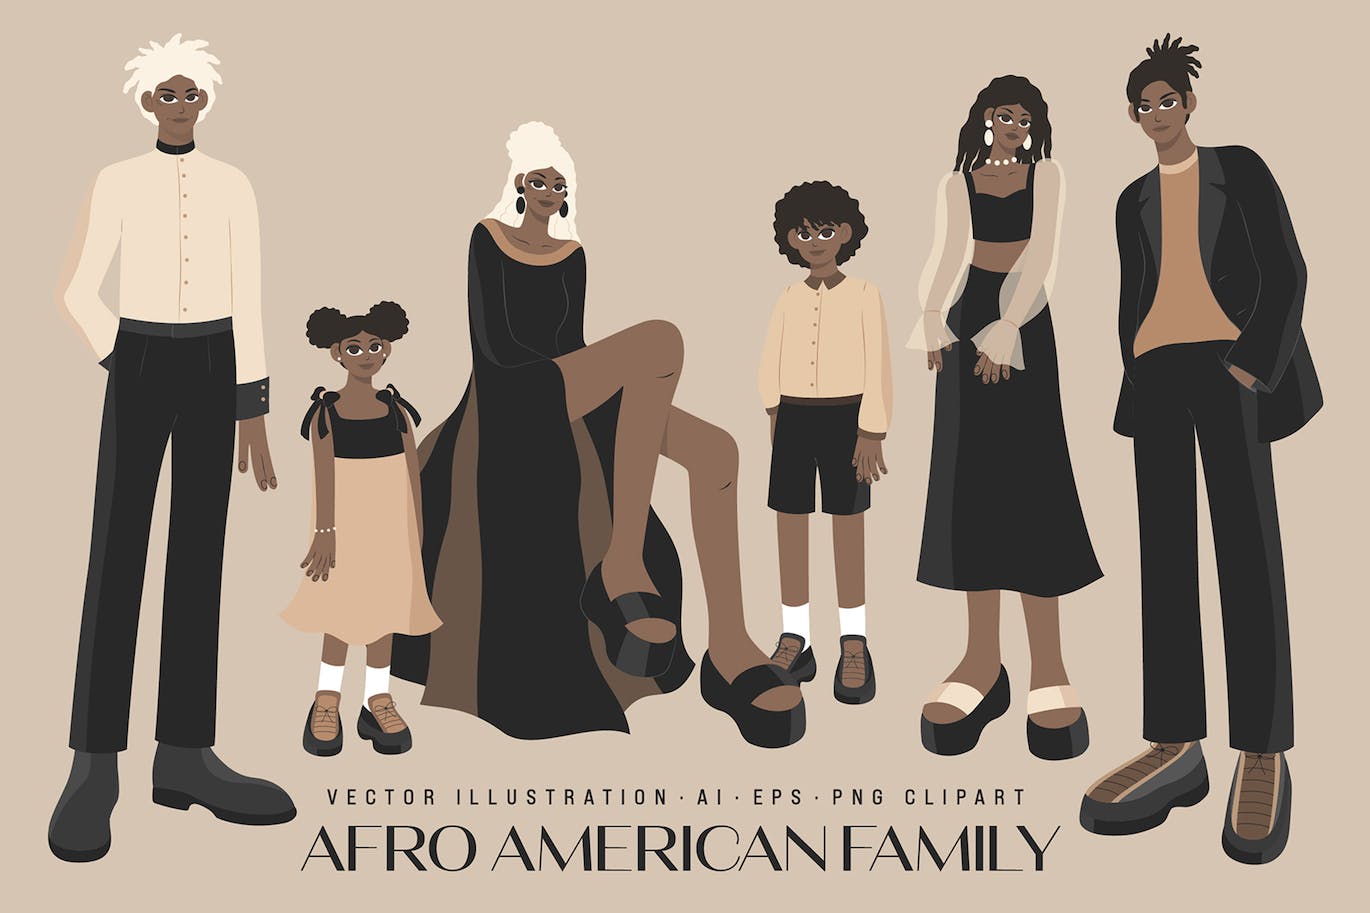 非洲家庭人物插画集 African Family Illustrations Set-1